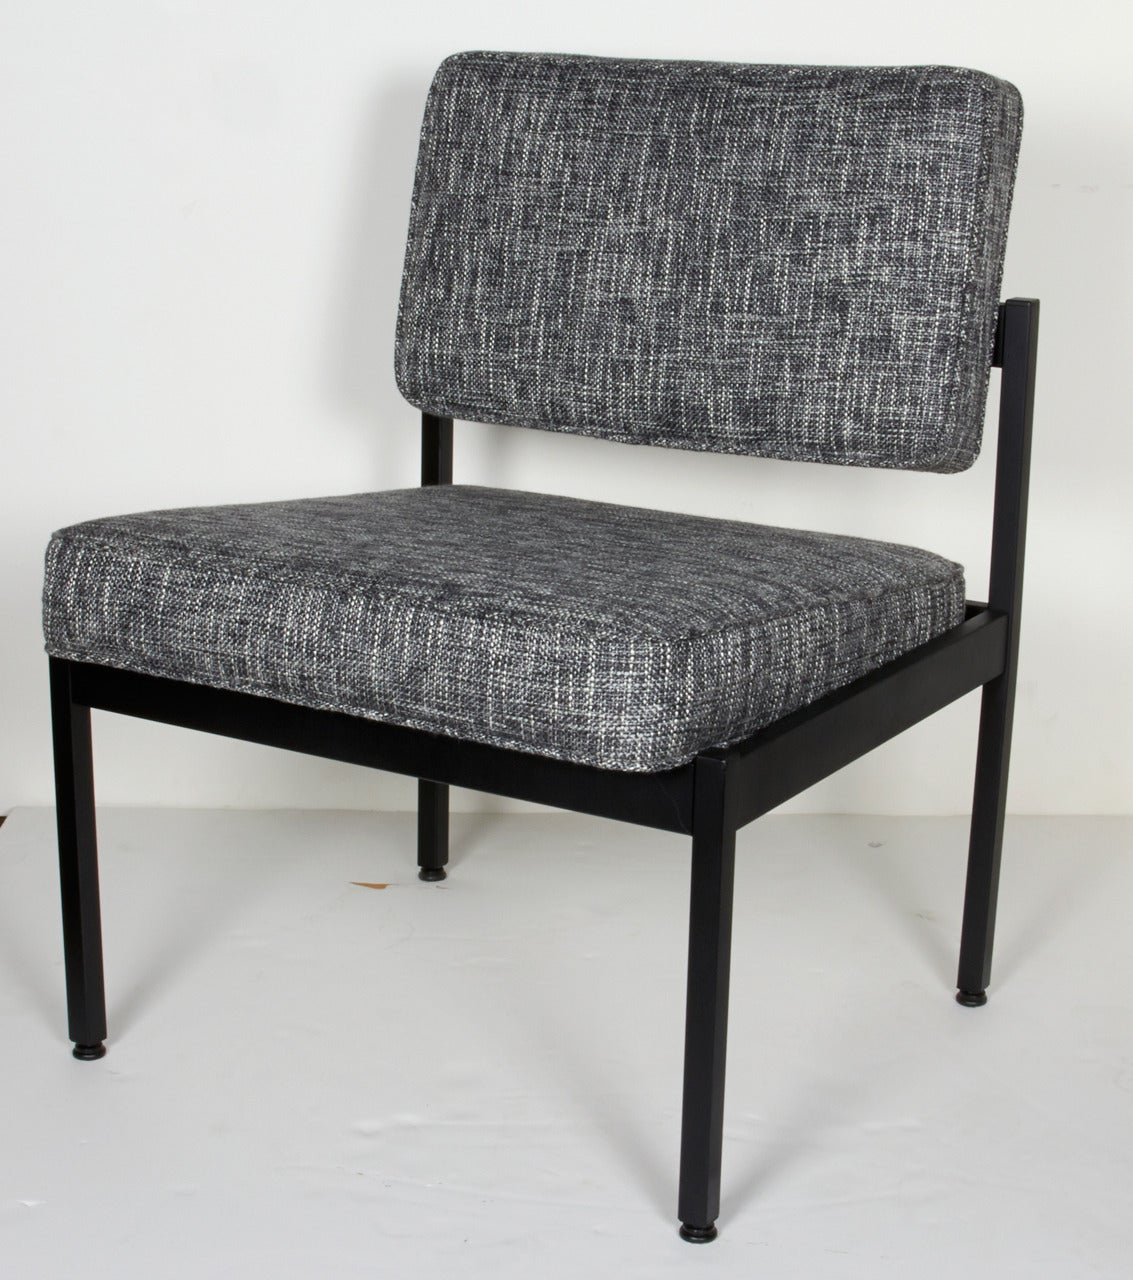 Pair of Vintage Knoll Style Industrial Chairs in Black Tweed, c. 1970's 3